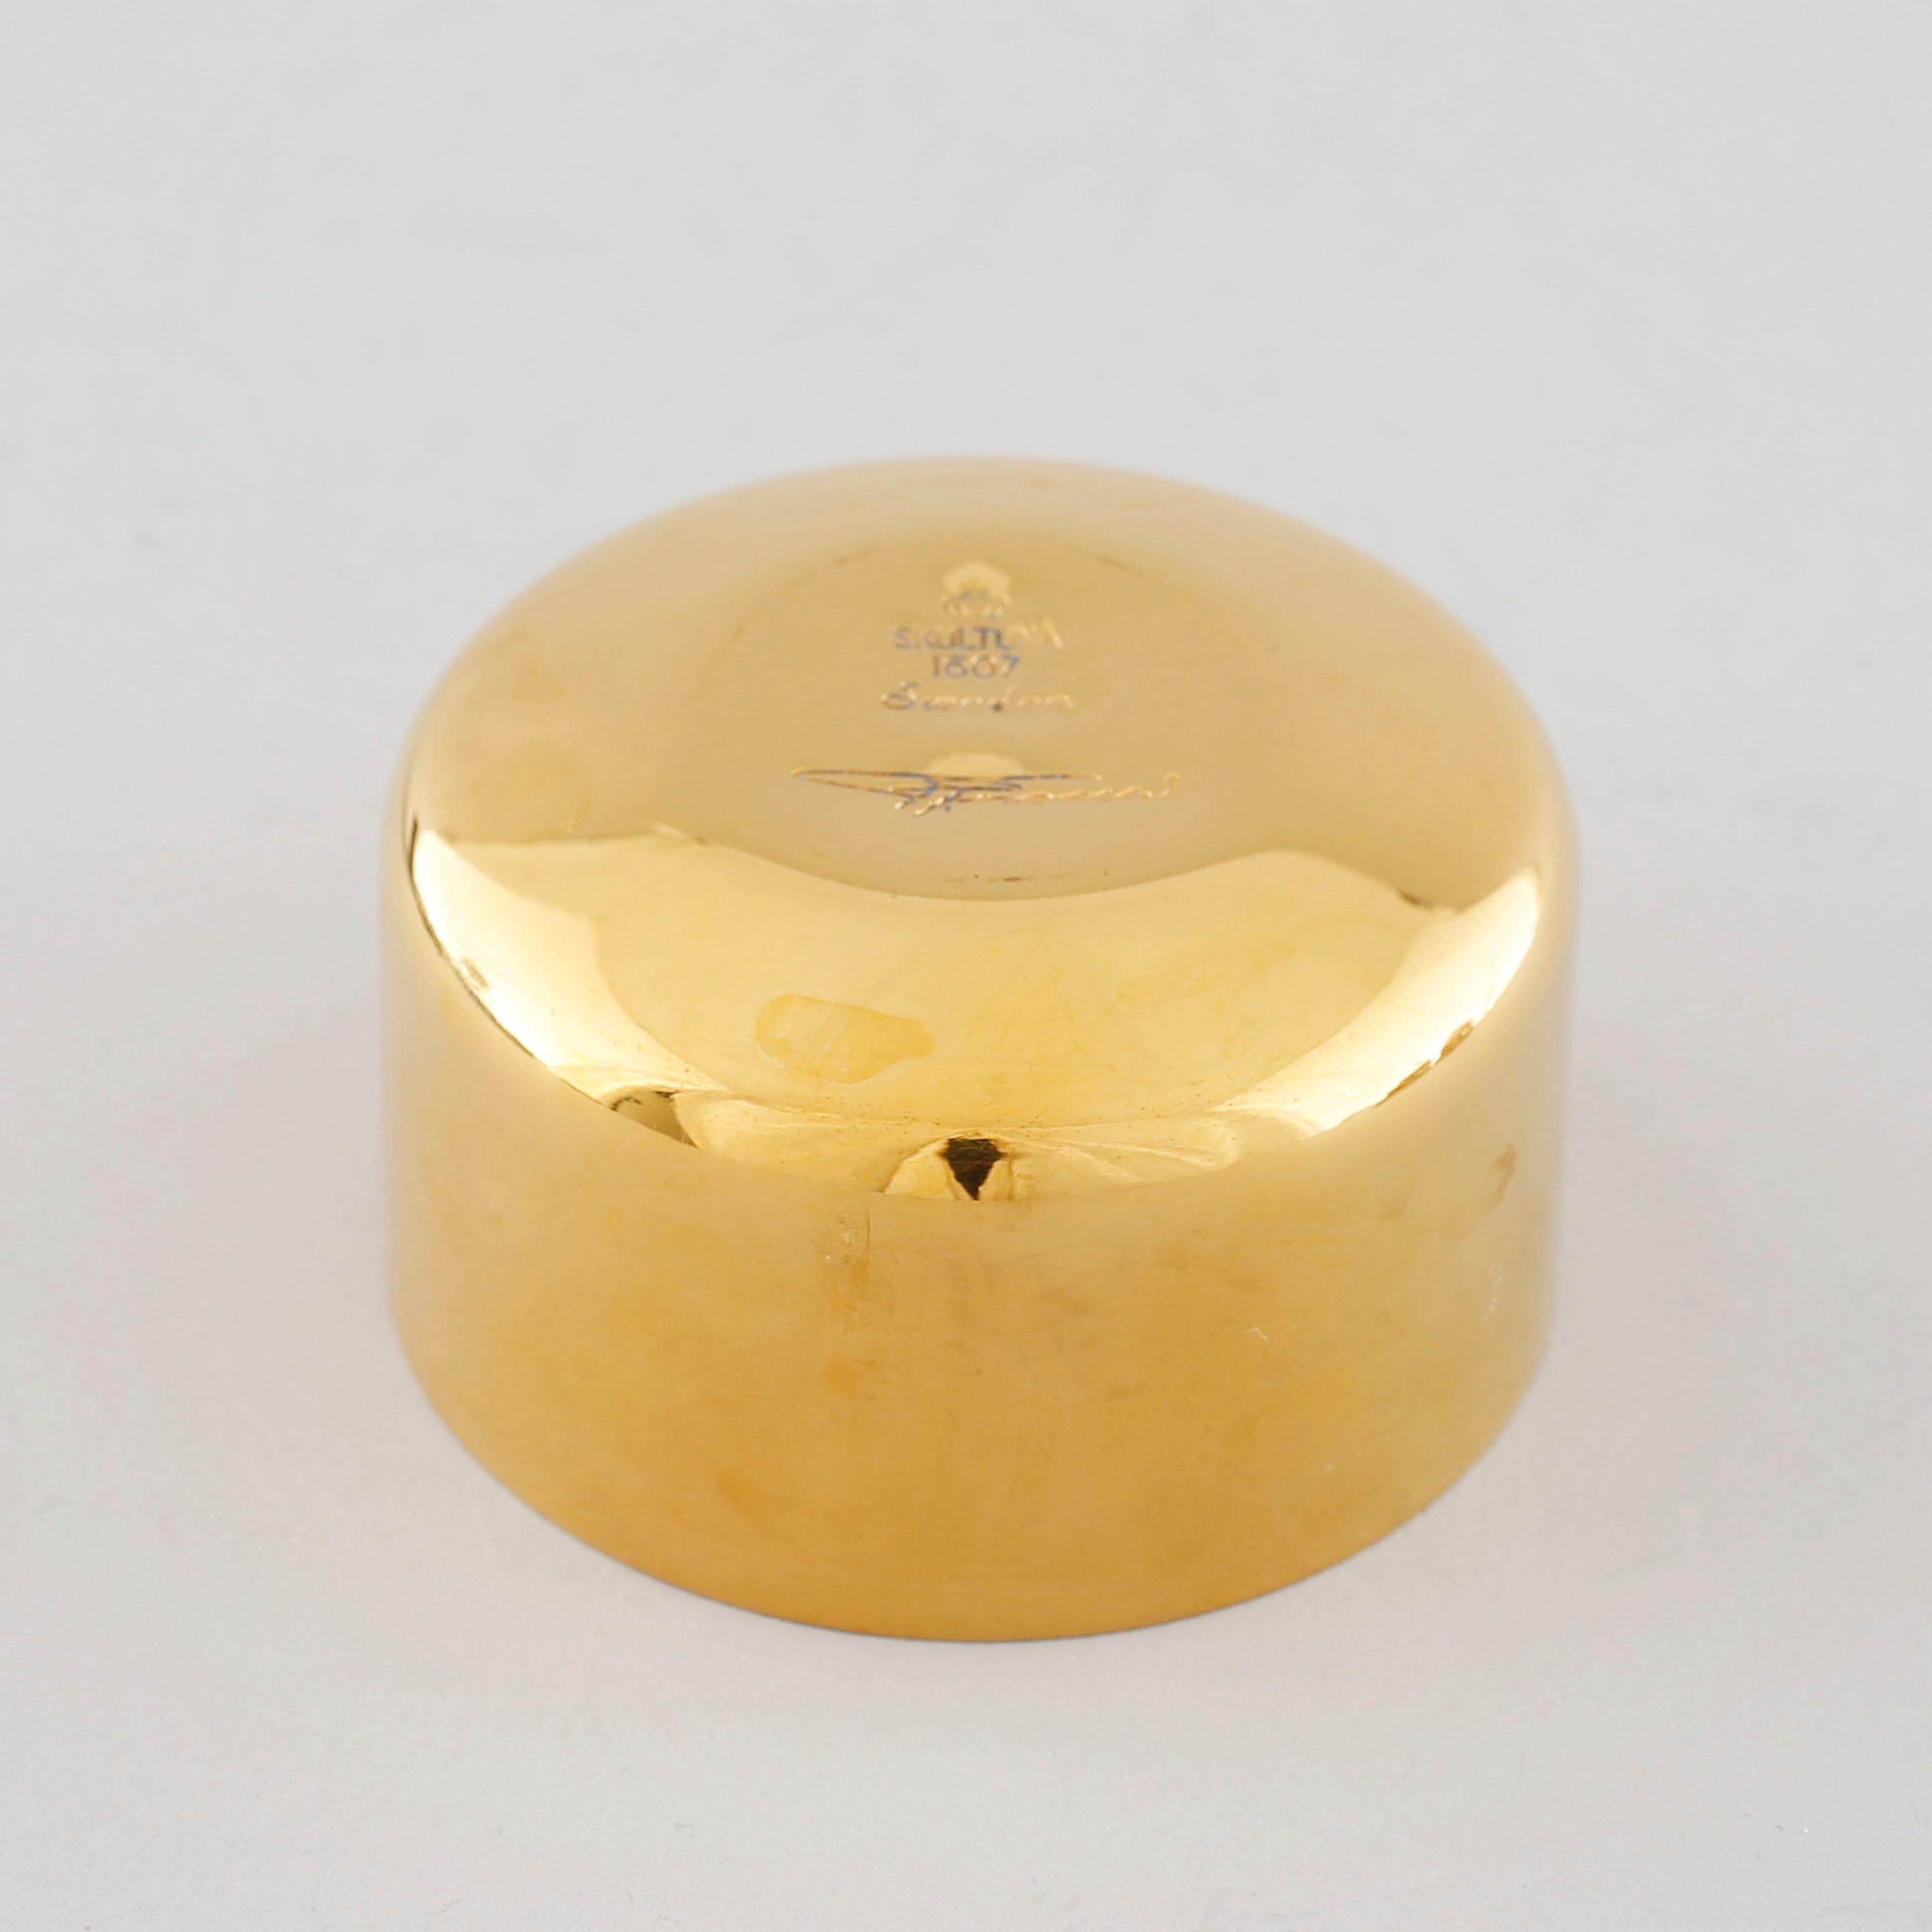 Verres à shot ''Supkopp'' en plaqué or 24 carats conçus par Pierre Forssell pour Skultuna, fabriqués en Suède vers 1960.
8 pièces dans leur boîte d'origine prix pour 1 verre
Bon état.